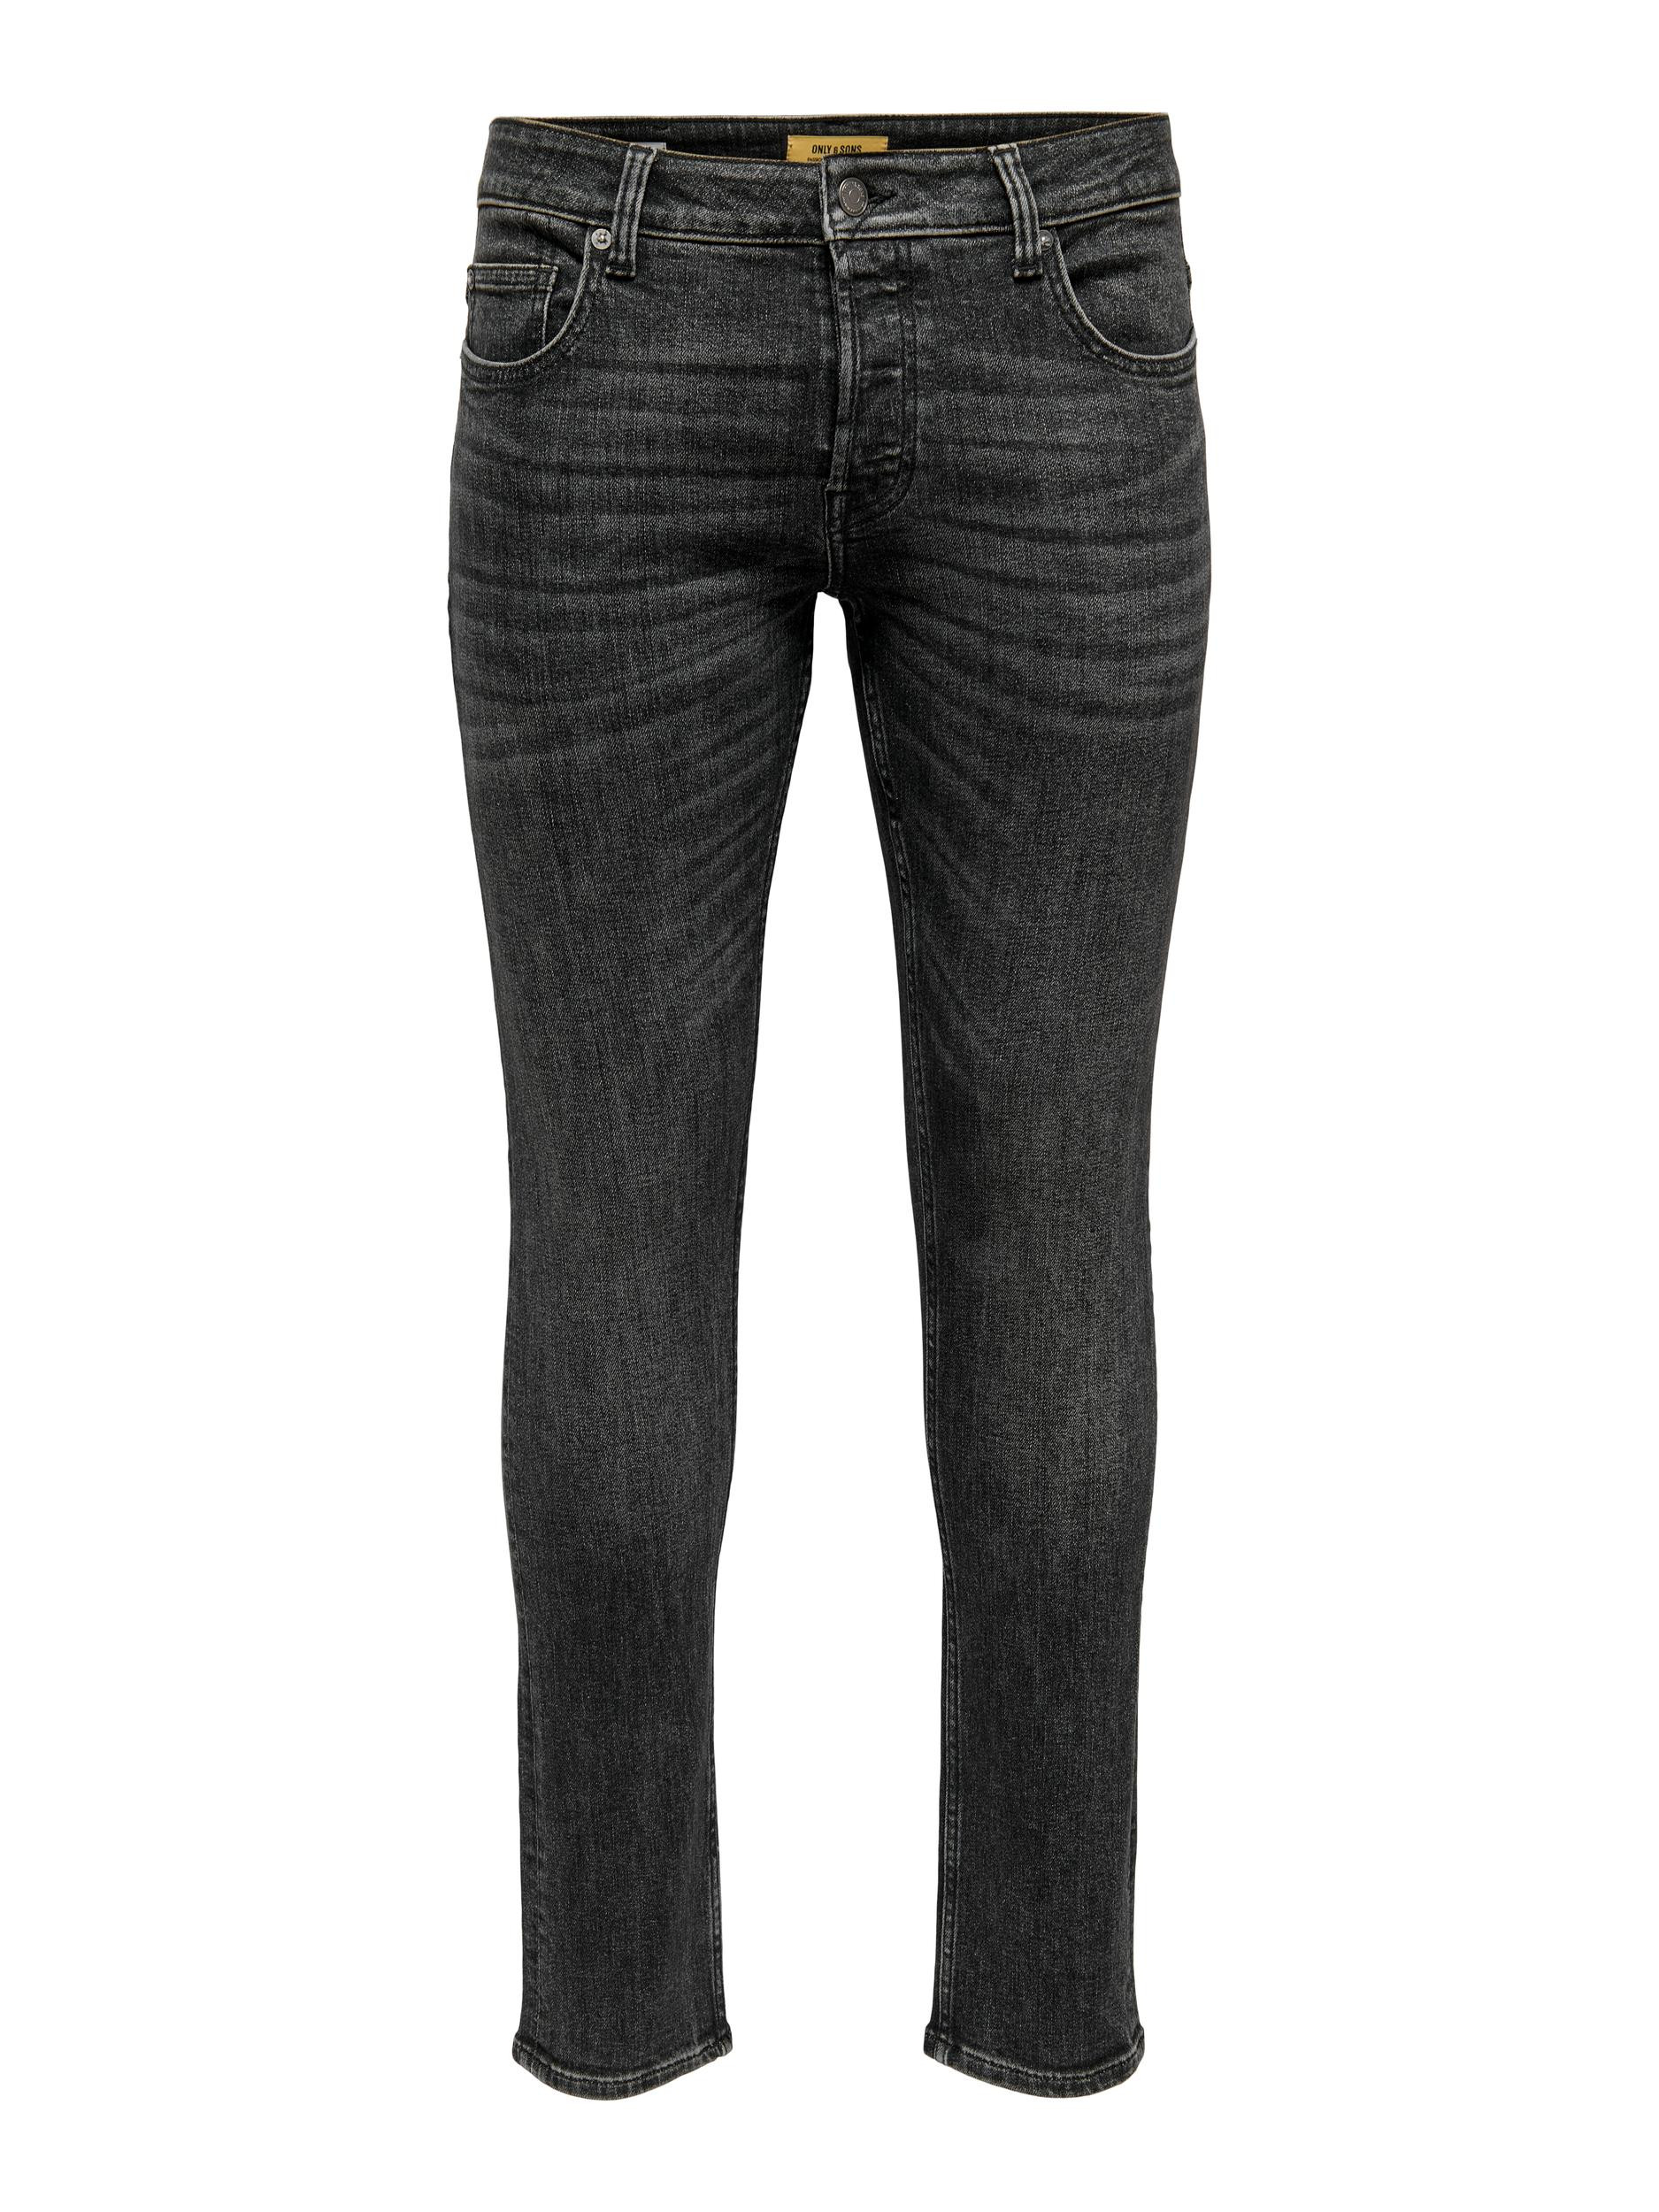 Afbeelding van Only & Sons Onsloom slim black 3145 jeans noos